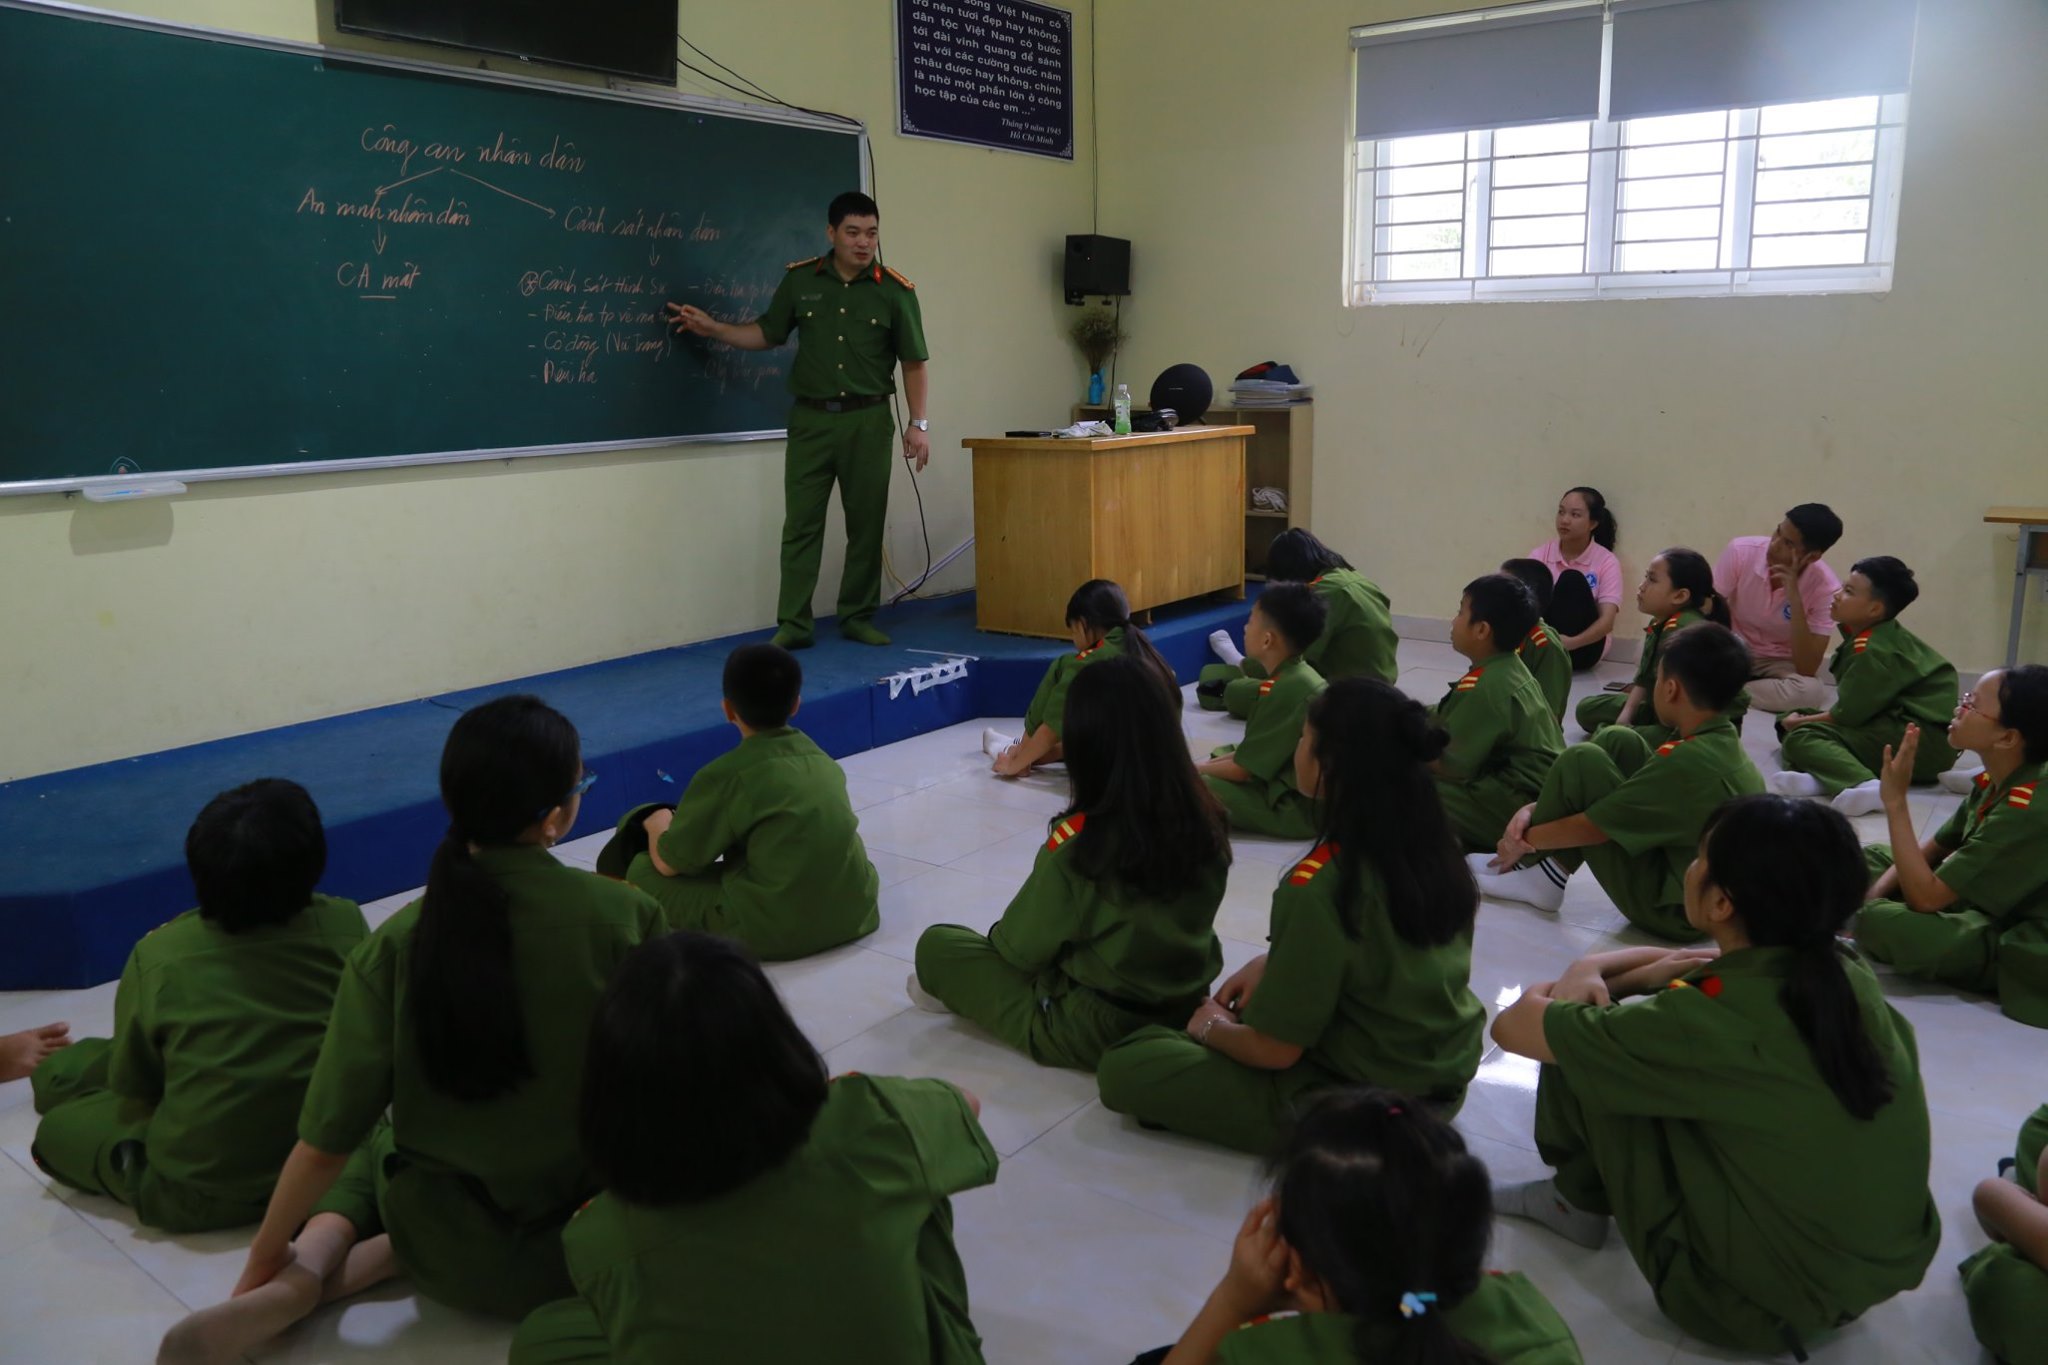 Lồng ghép trong các nội dung giới thiệu về lực lượng cảnh sát Việt Nam, các em nhỏ cũng được học cách xử lý khi gặp các tình huống nguy hiểm, đặc biệt luôn tin tưởng sự hỗ trợ của các cô chú công an